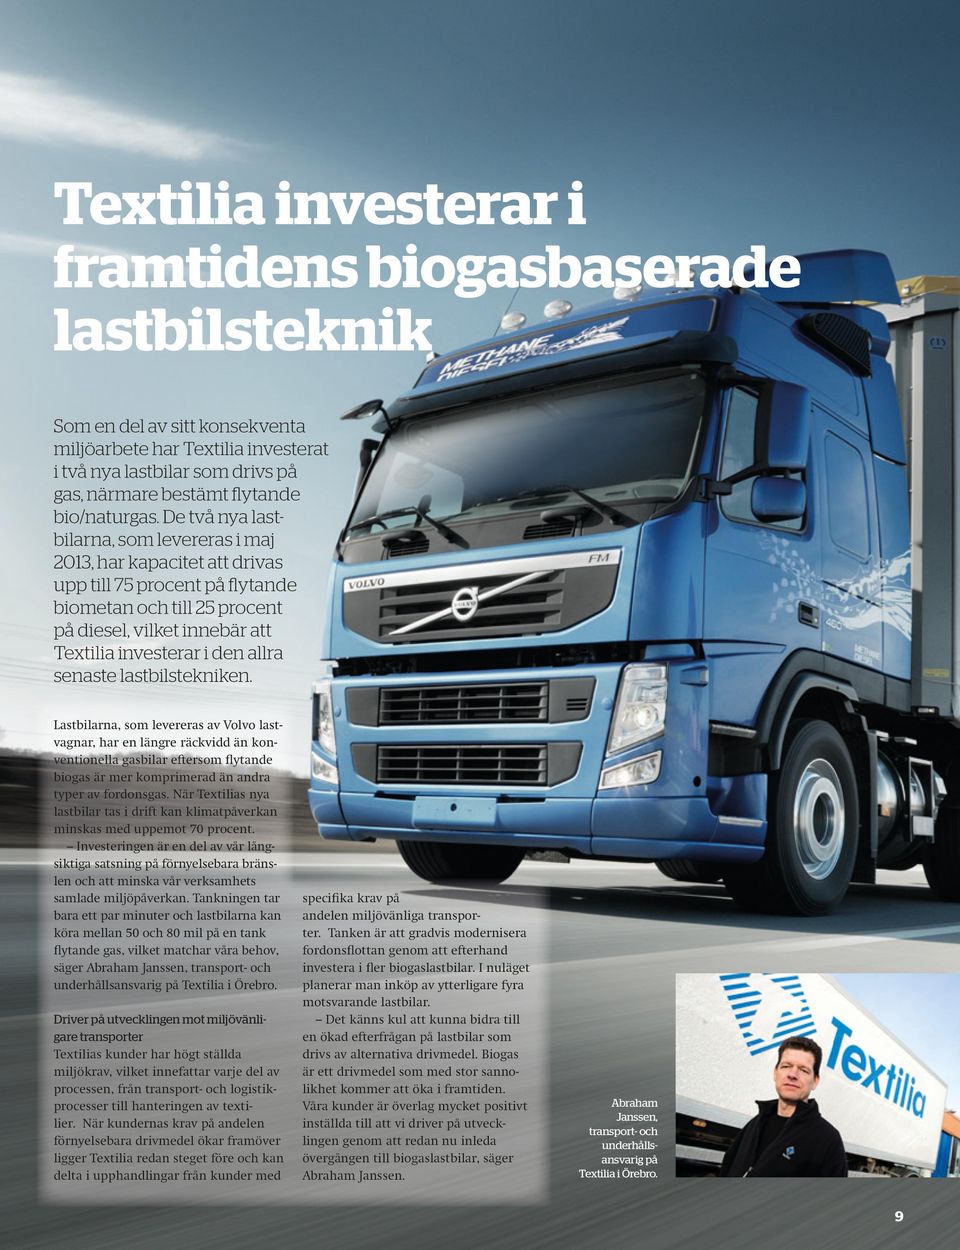 De två nya lastbilarna, som levereras i maj 2013, har kapacitet att drivas upp till 75 procent på flytande biometan och till 25 procent på diesel, vilket innebär att Textilia investerar i den allra